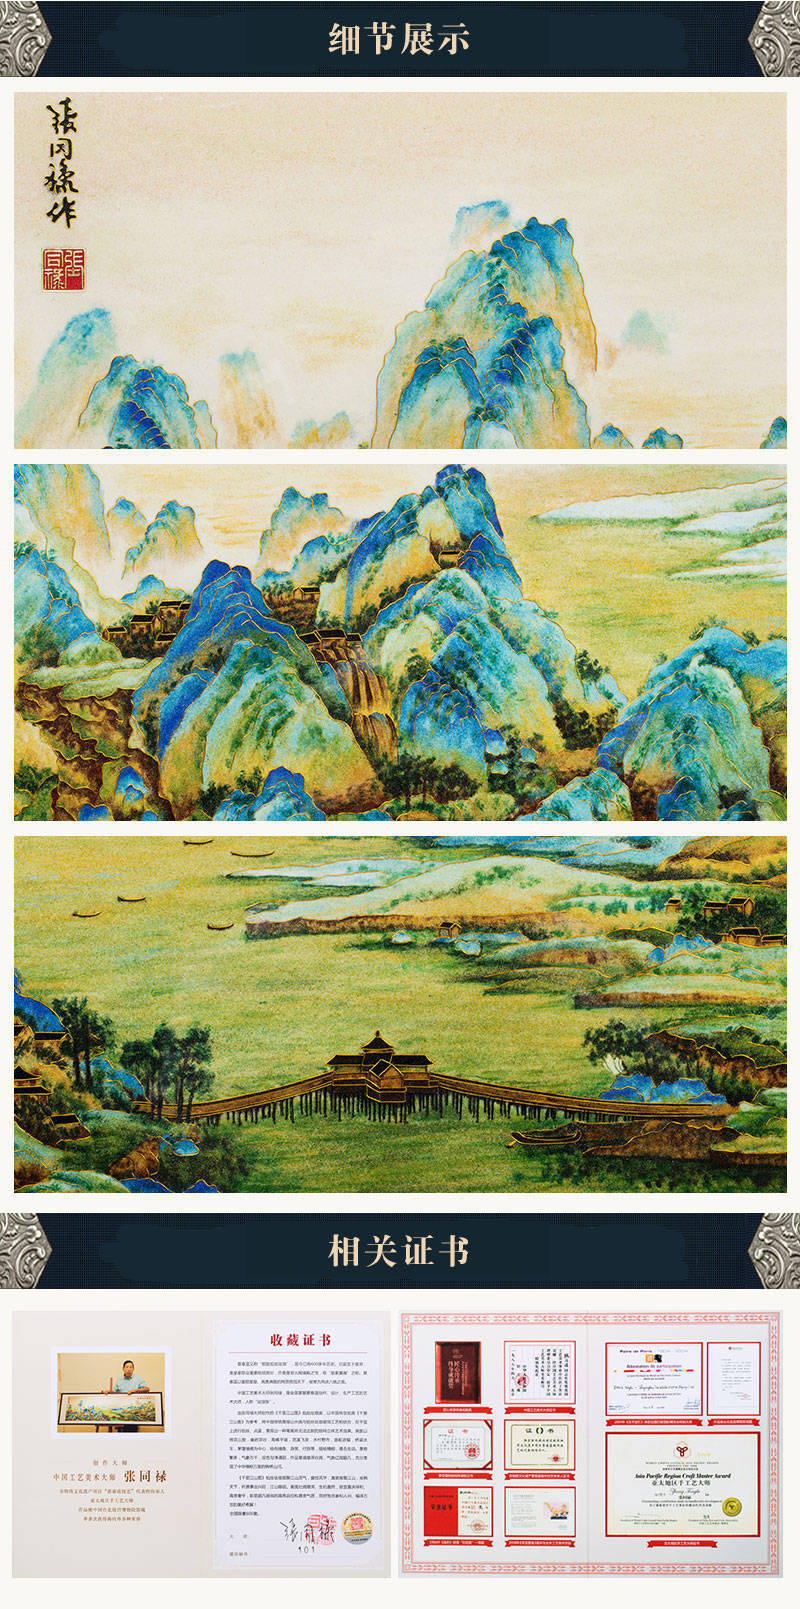 张同禄大师创作《千里江山图》掐丝珐琅画 收藏价值解析